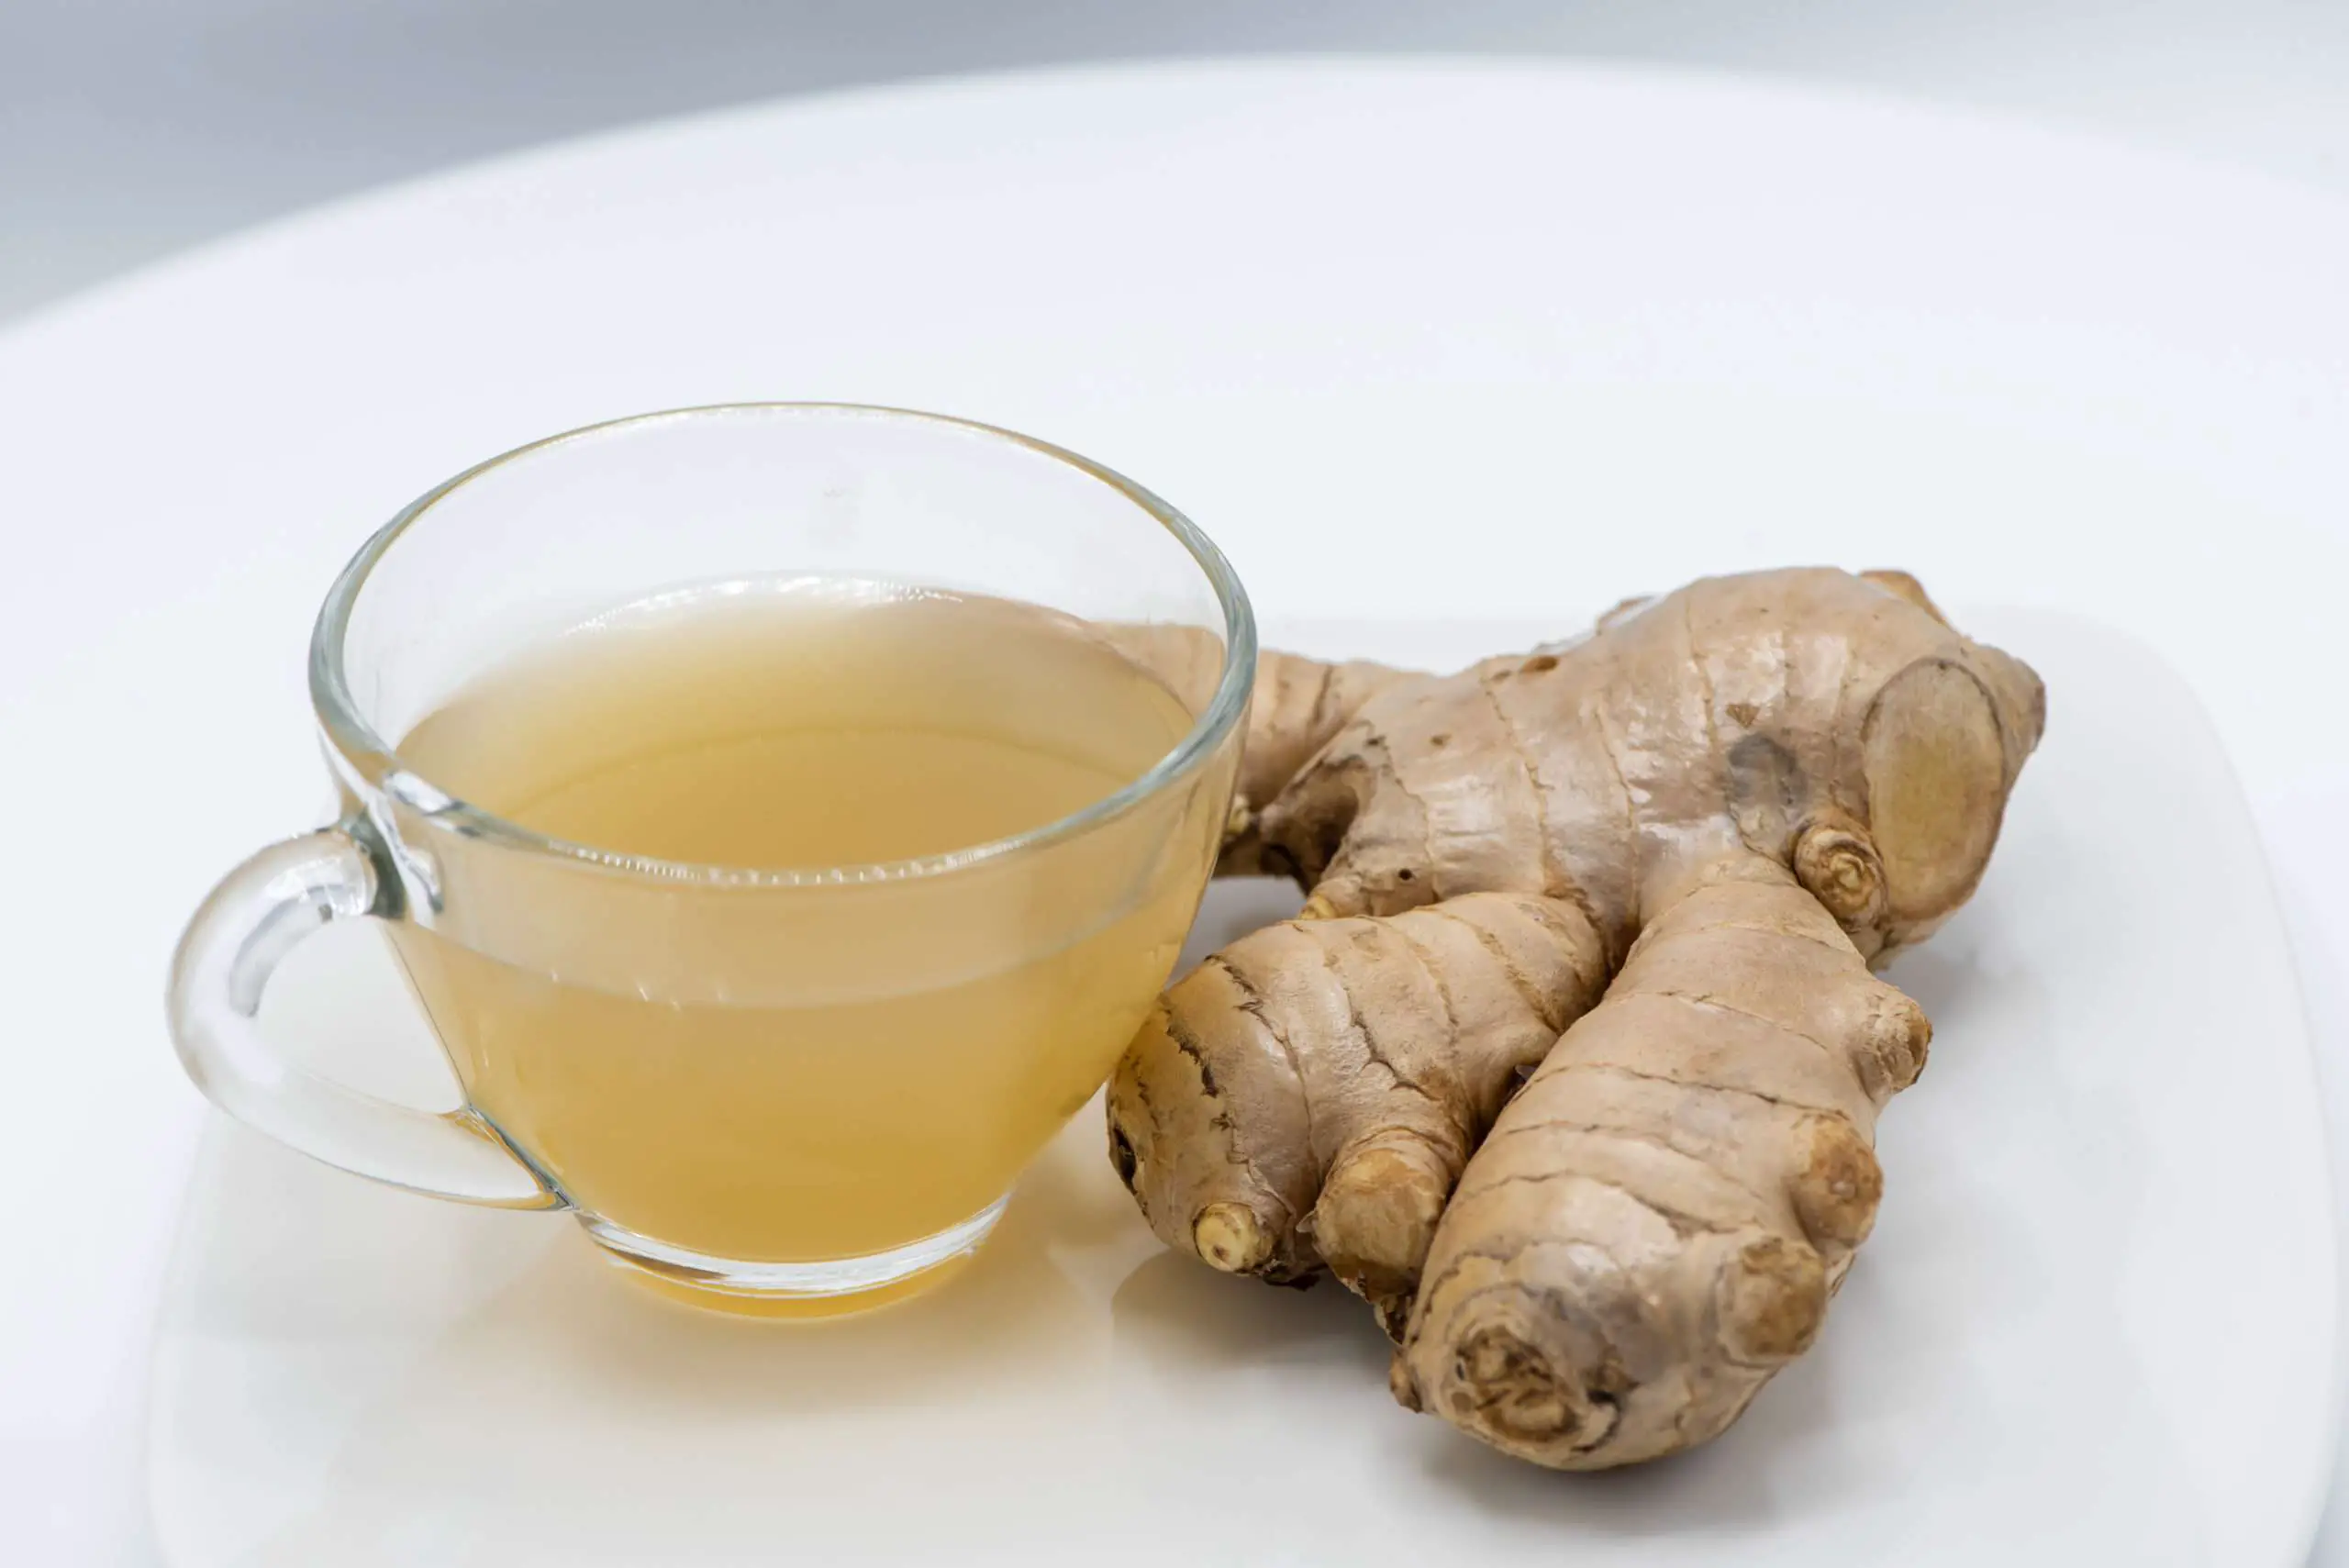 How to make turmeric ginger tea